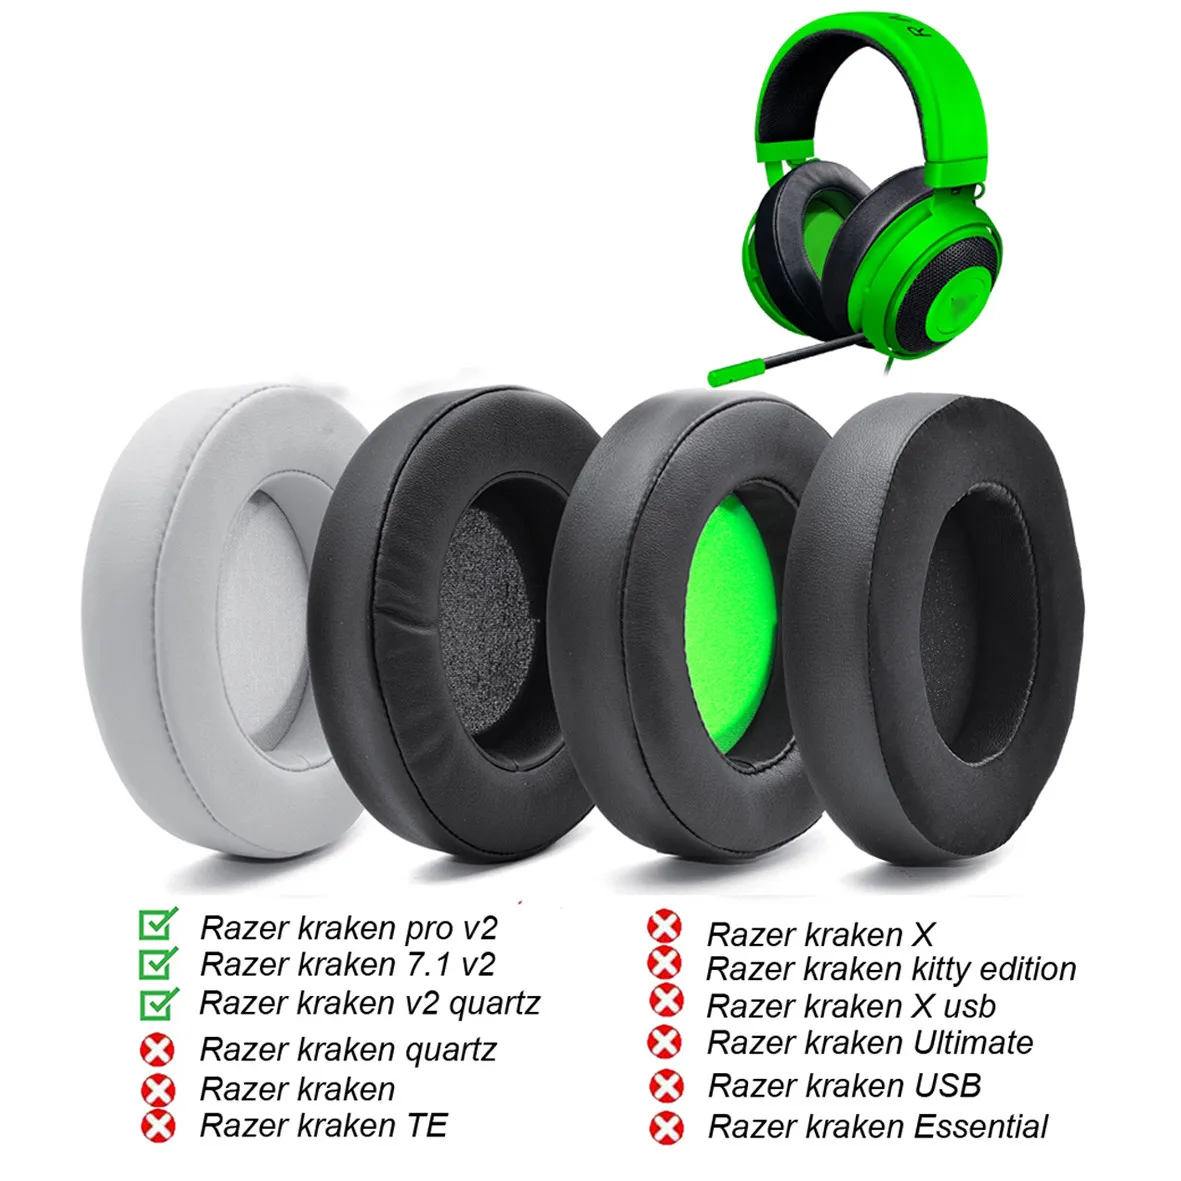 

New Replacement Earpads Foam Ear Pads Cushions For Razer Kraken 7.1 Chroma V2 USB Gaming Pro V2 Headphone Earmuffs